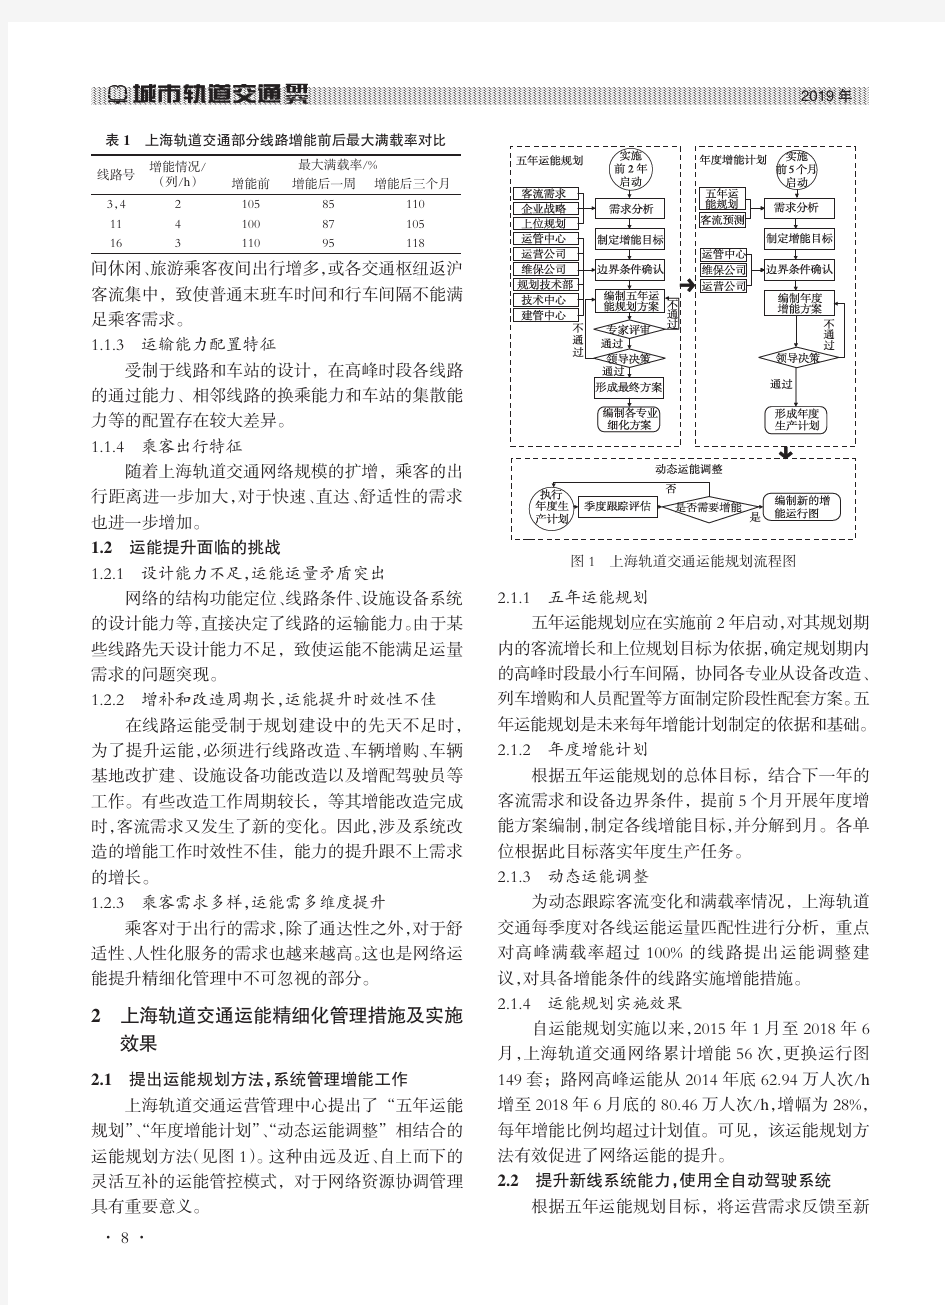 上海轨道交通超大网络运能精细化管理研究